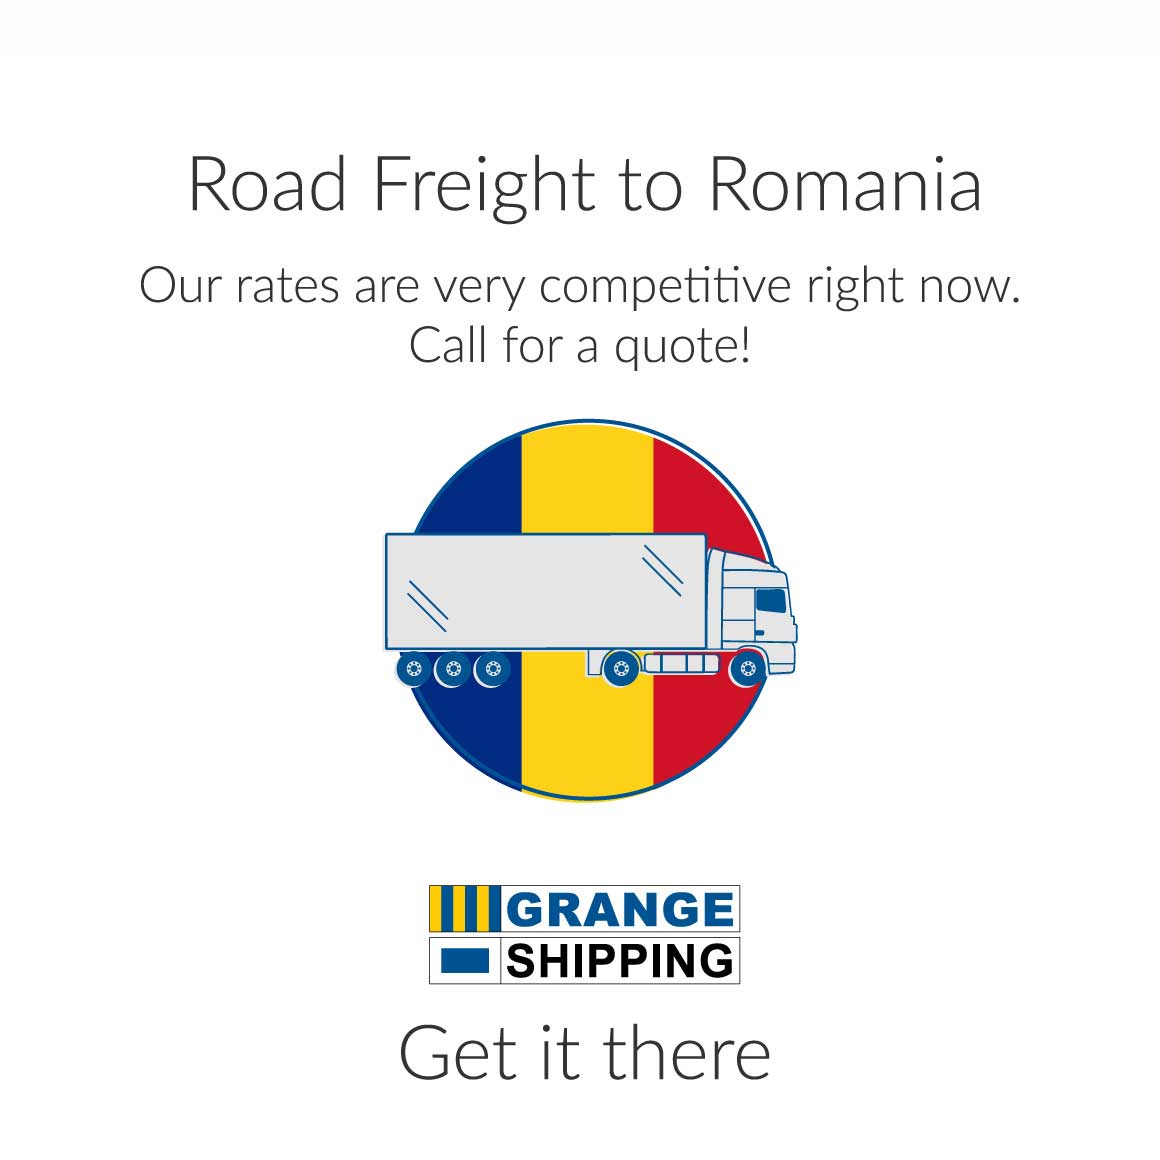 Road Freight to Romania